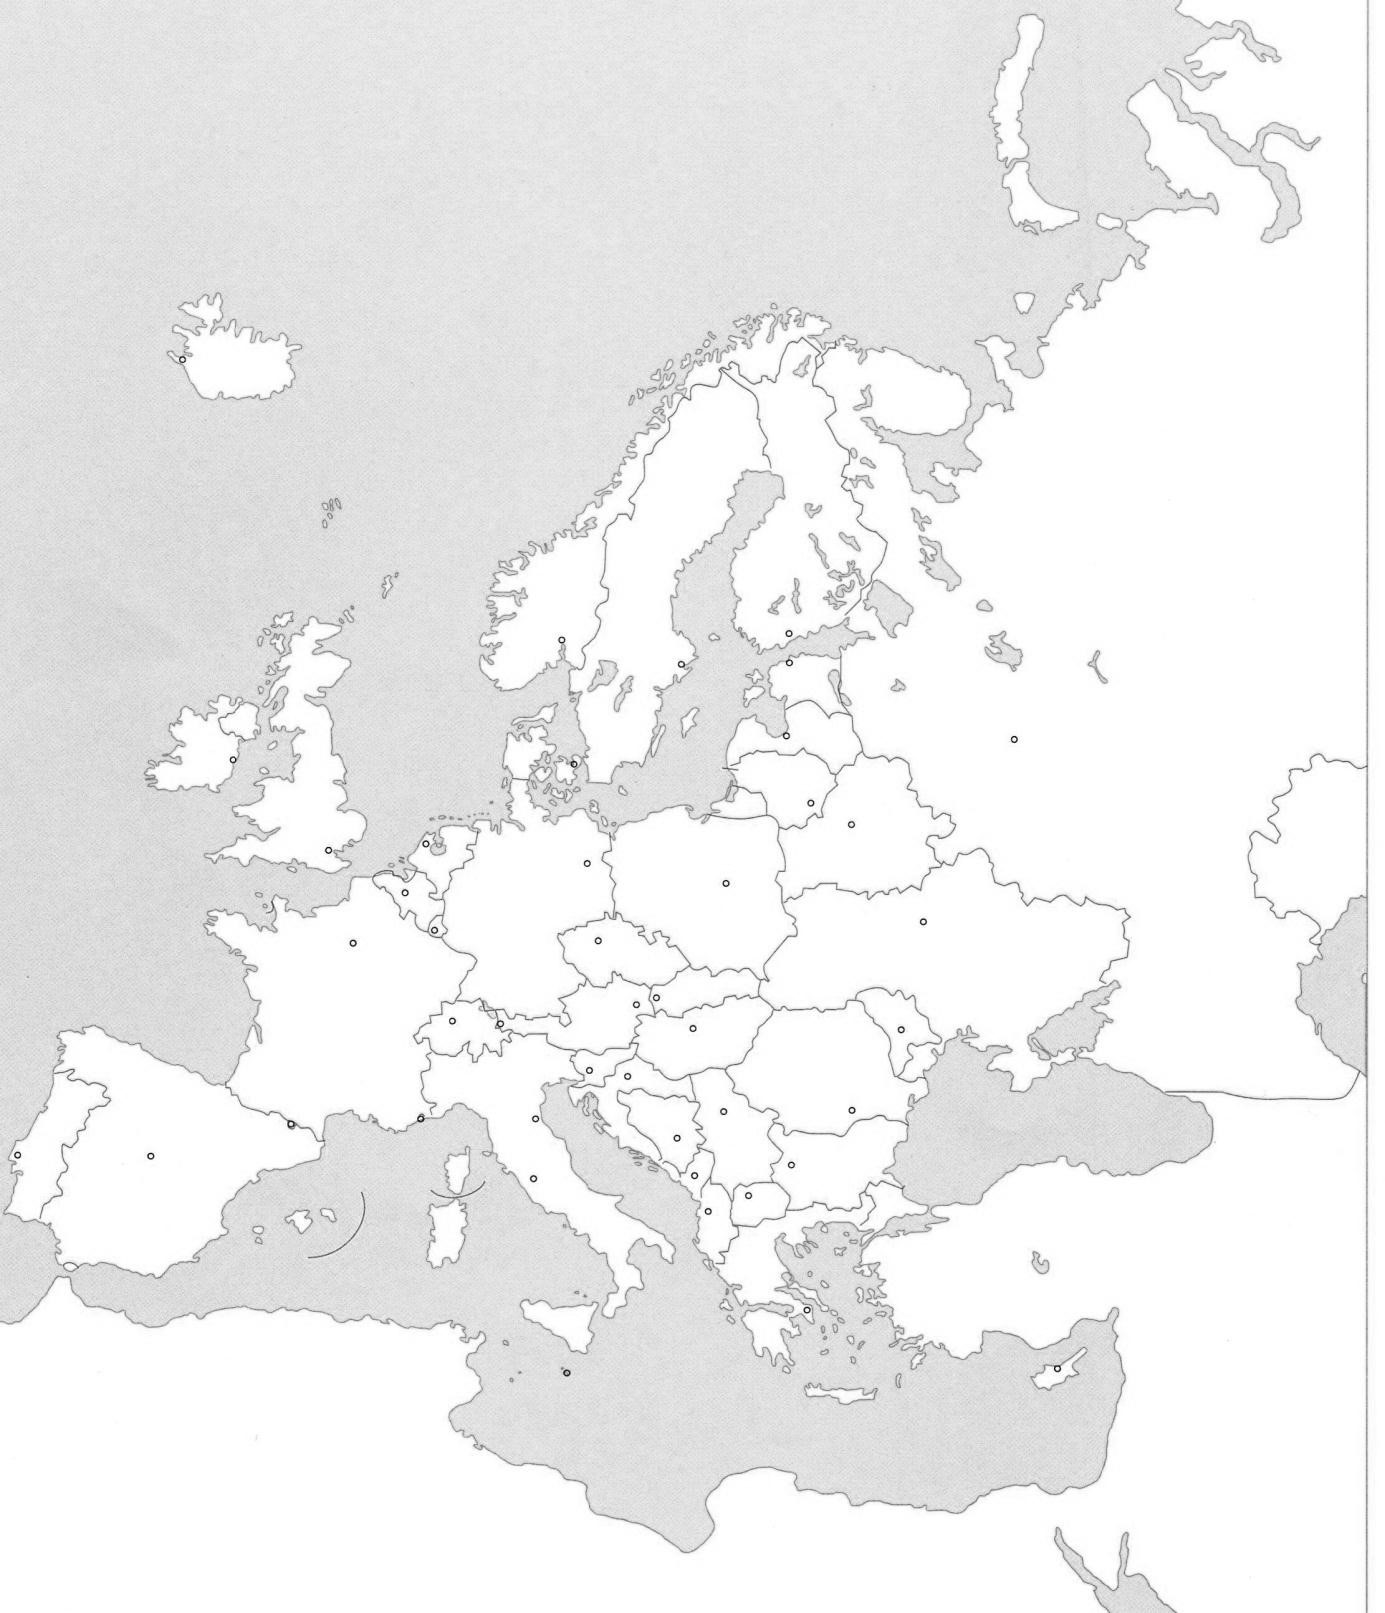 slijepa karta južne europe Osnovna škola 